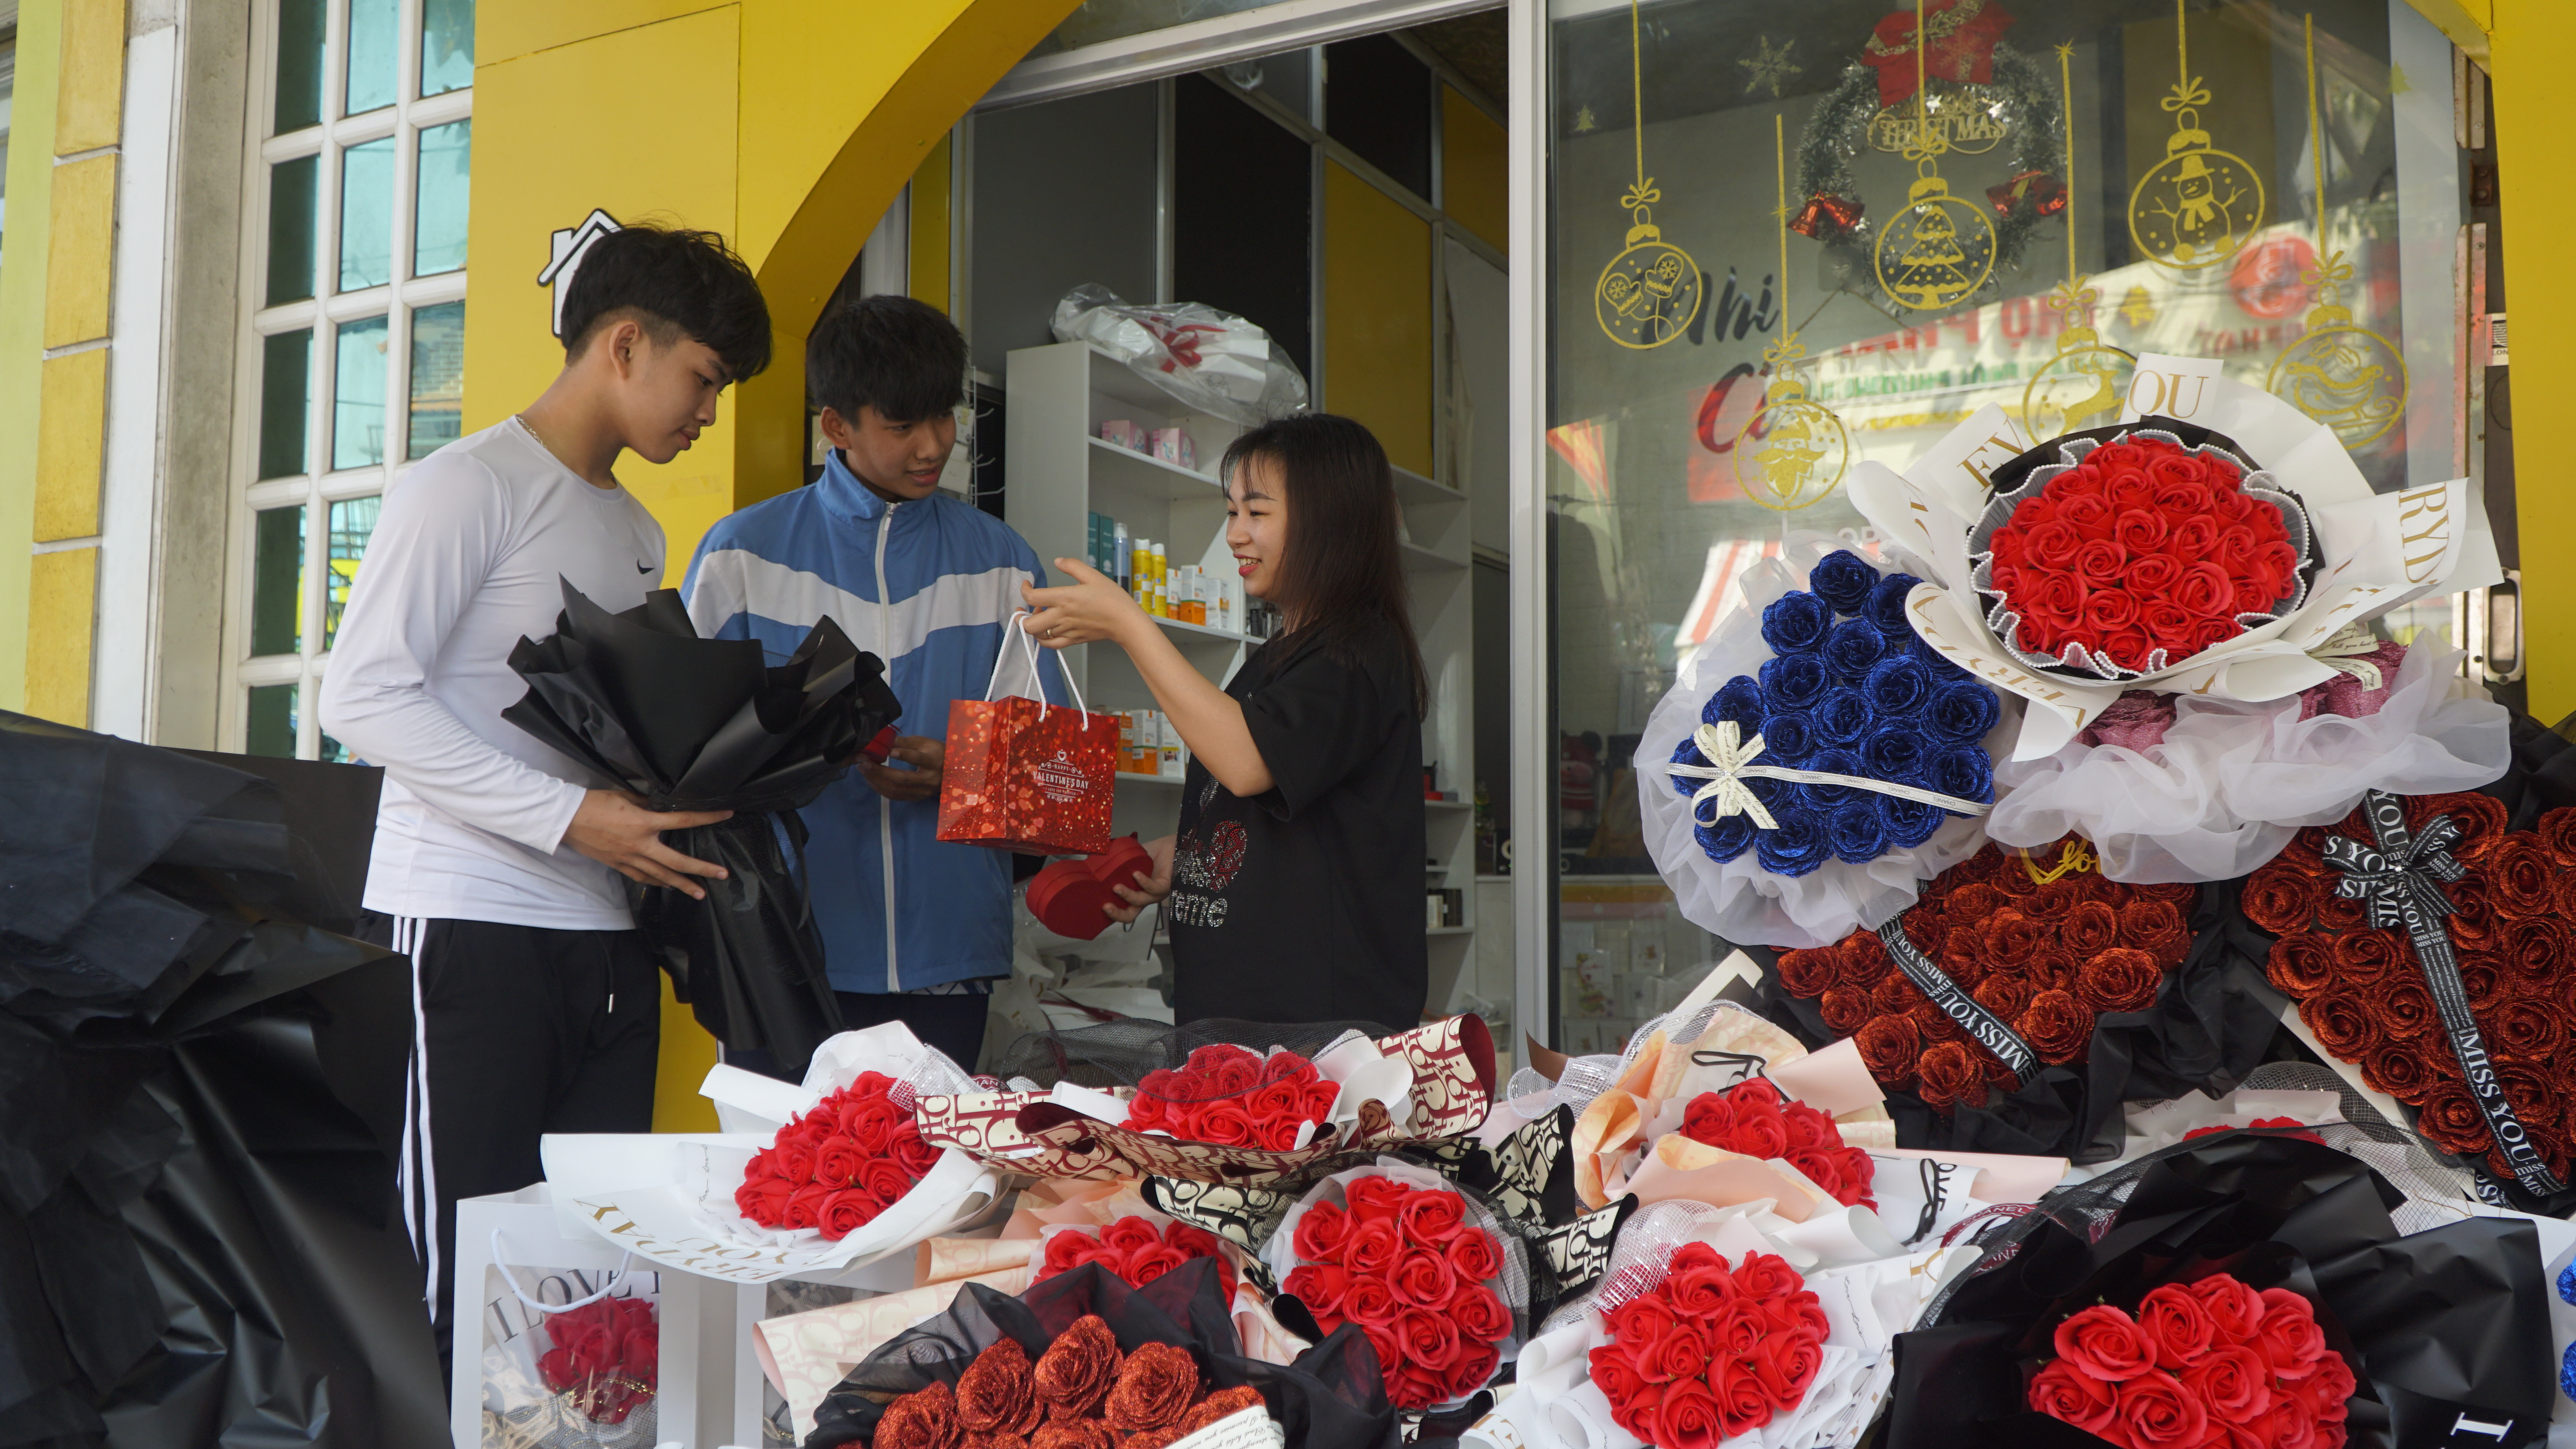 Hoa hồng sáp là một trong những sản phẩm được giới trẻ ưa chuộng trong dịp lễ Valentine năm nay.